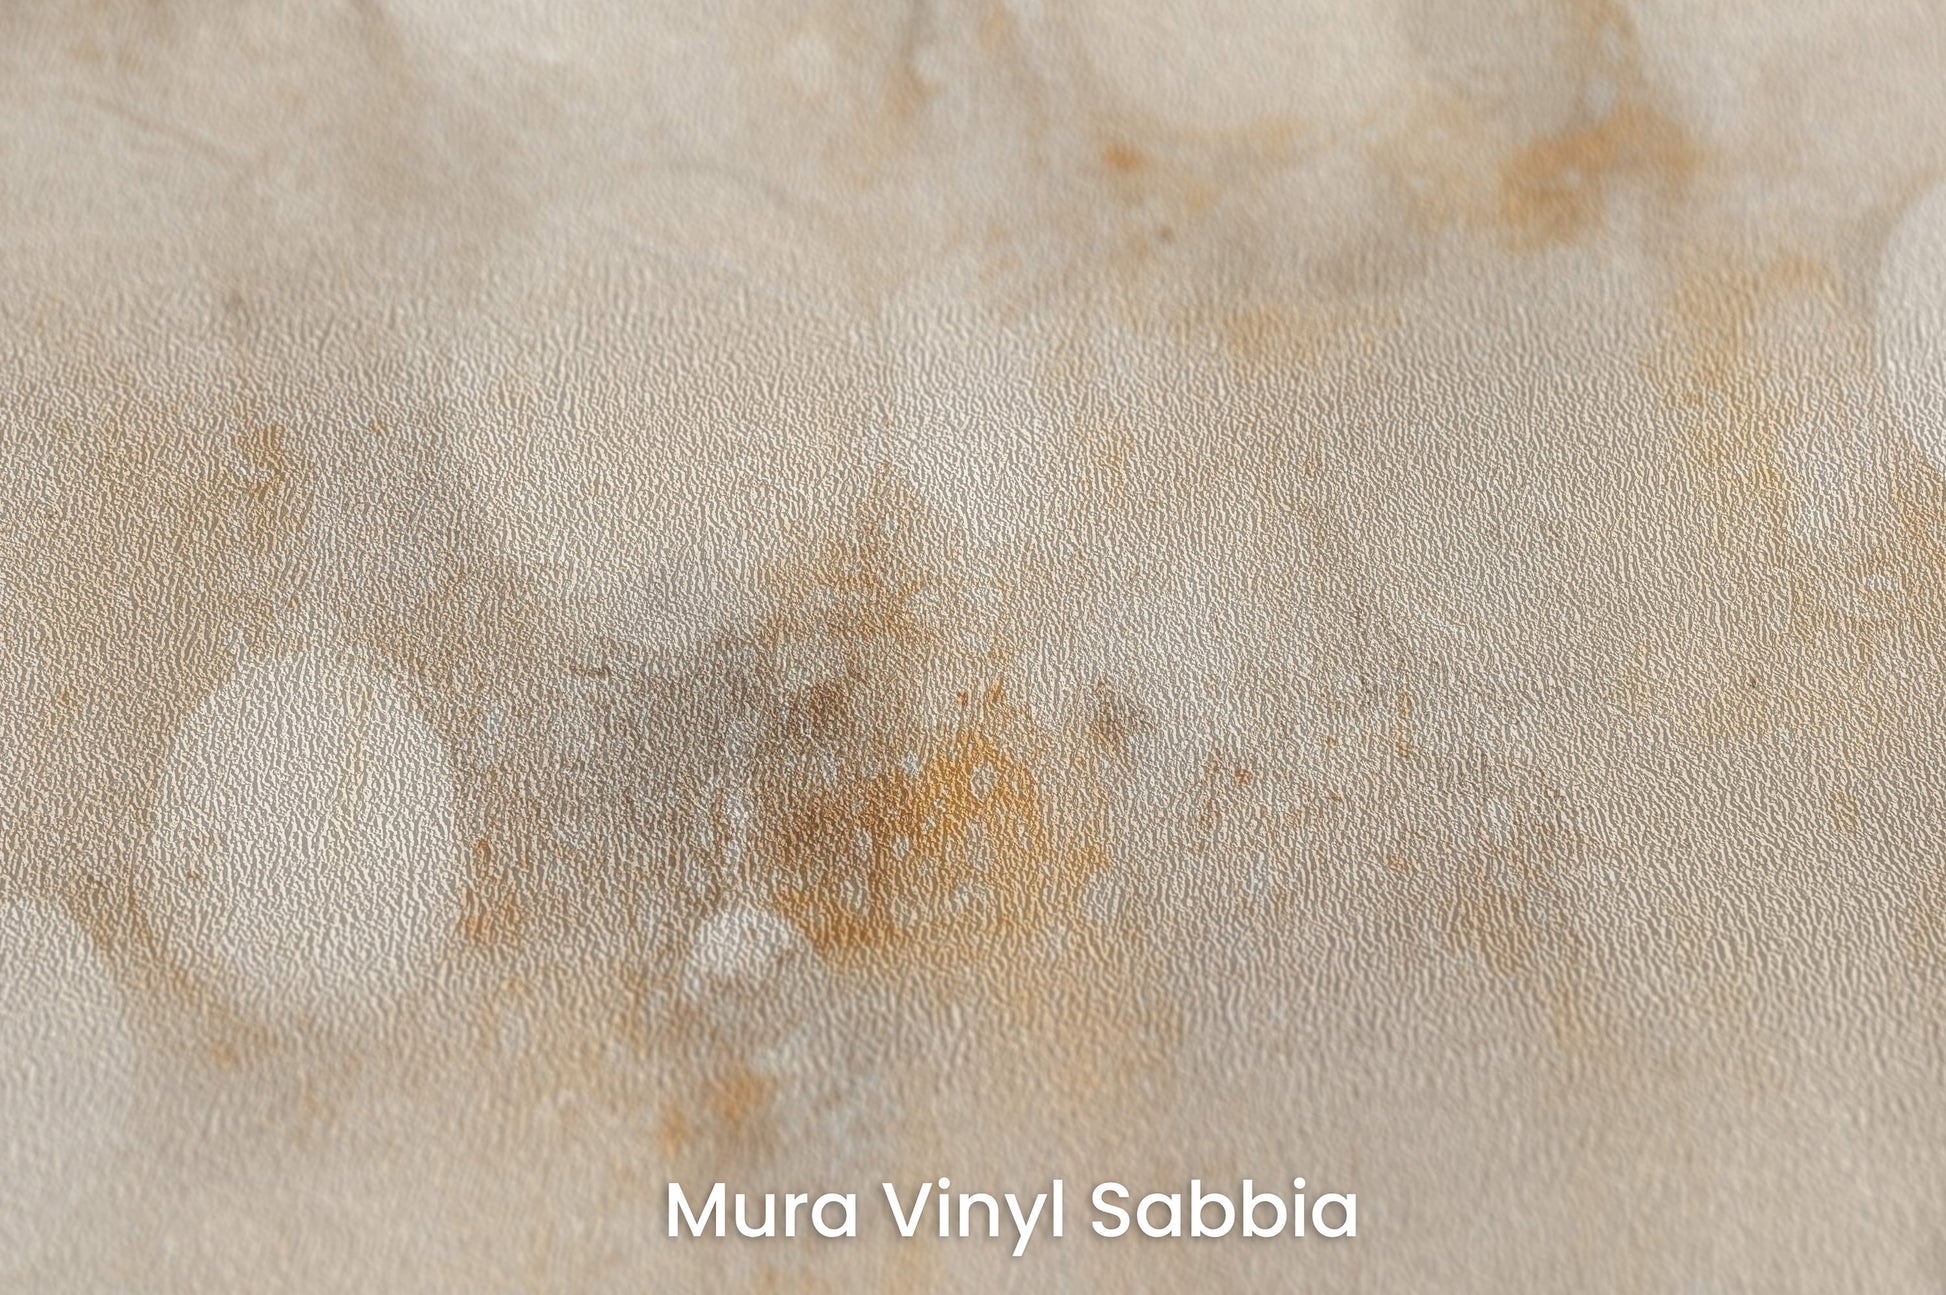 Zbliżenie na artystyczną fototapetę o nazwie TRANQUIL DAWN ORBS na podłożu Mura Vinyl Sabbia struktura grubego ziarna piasku.